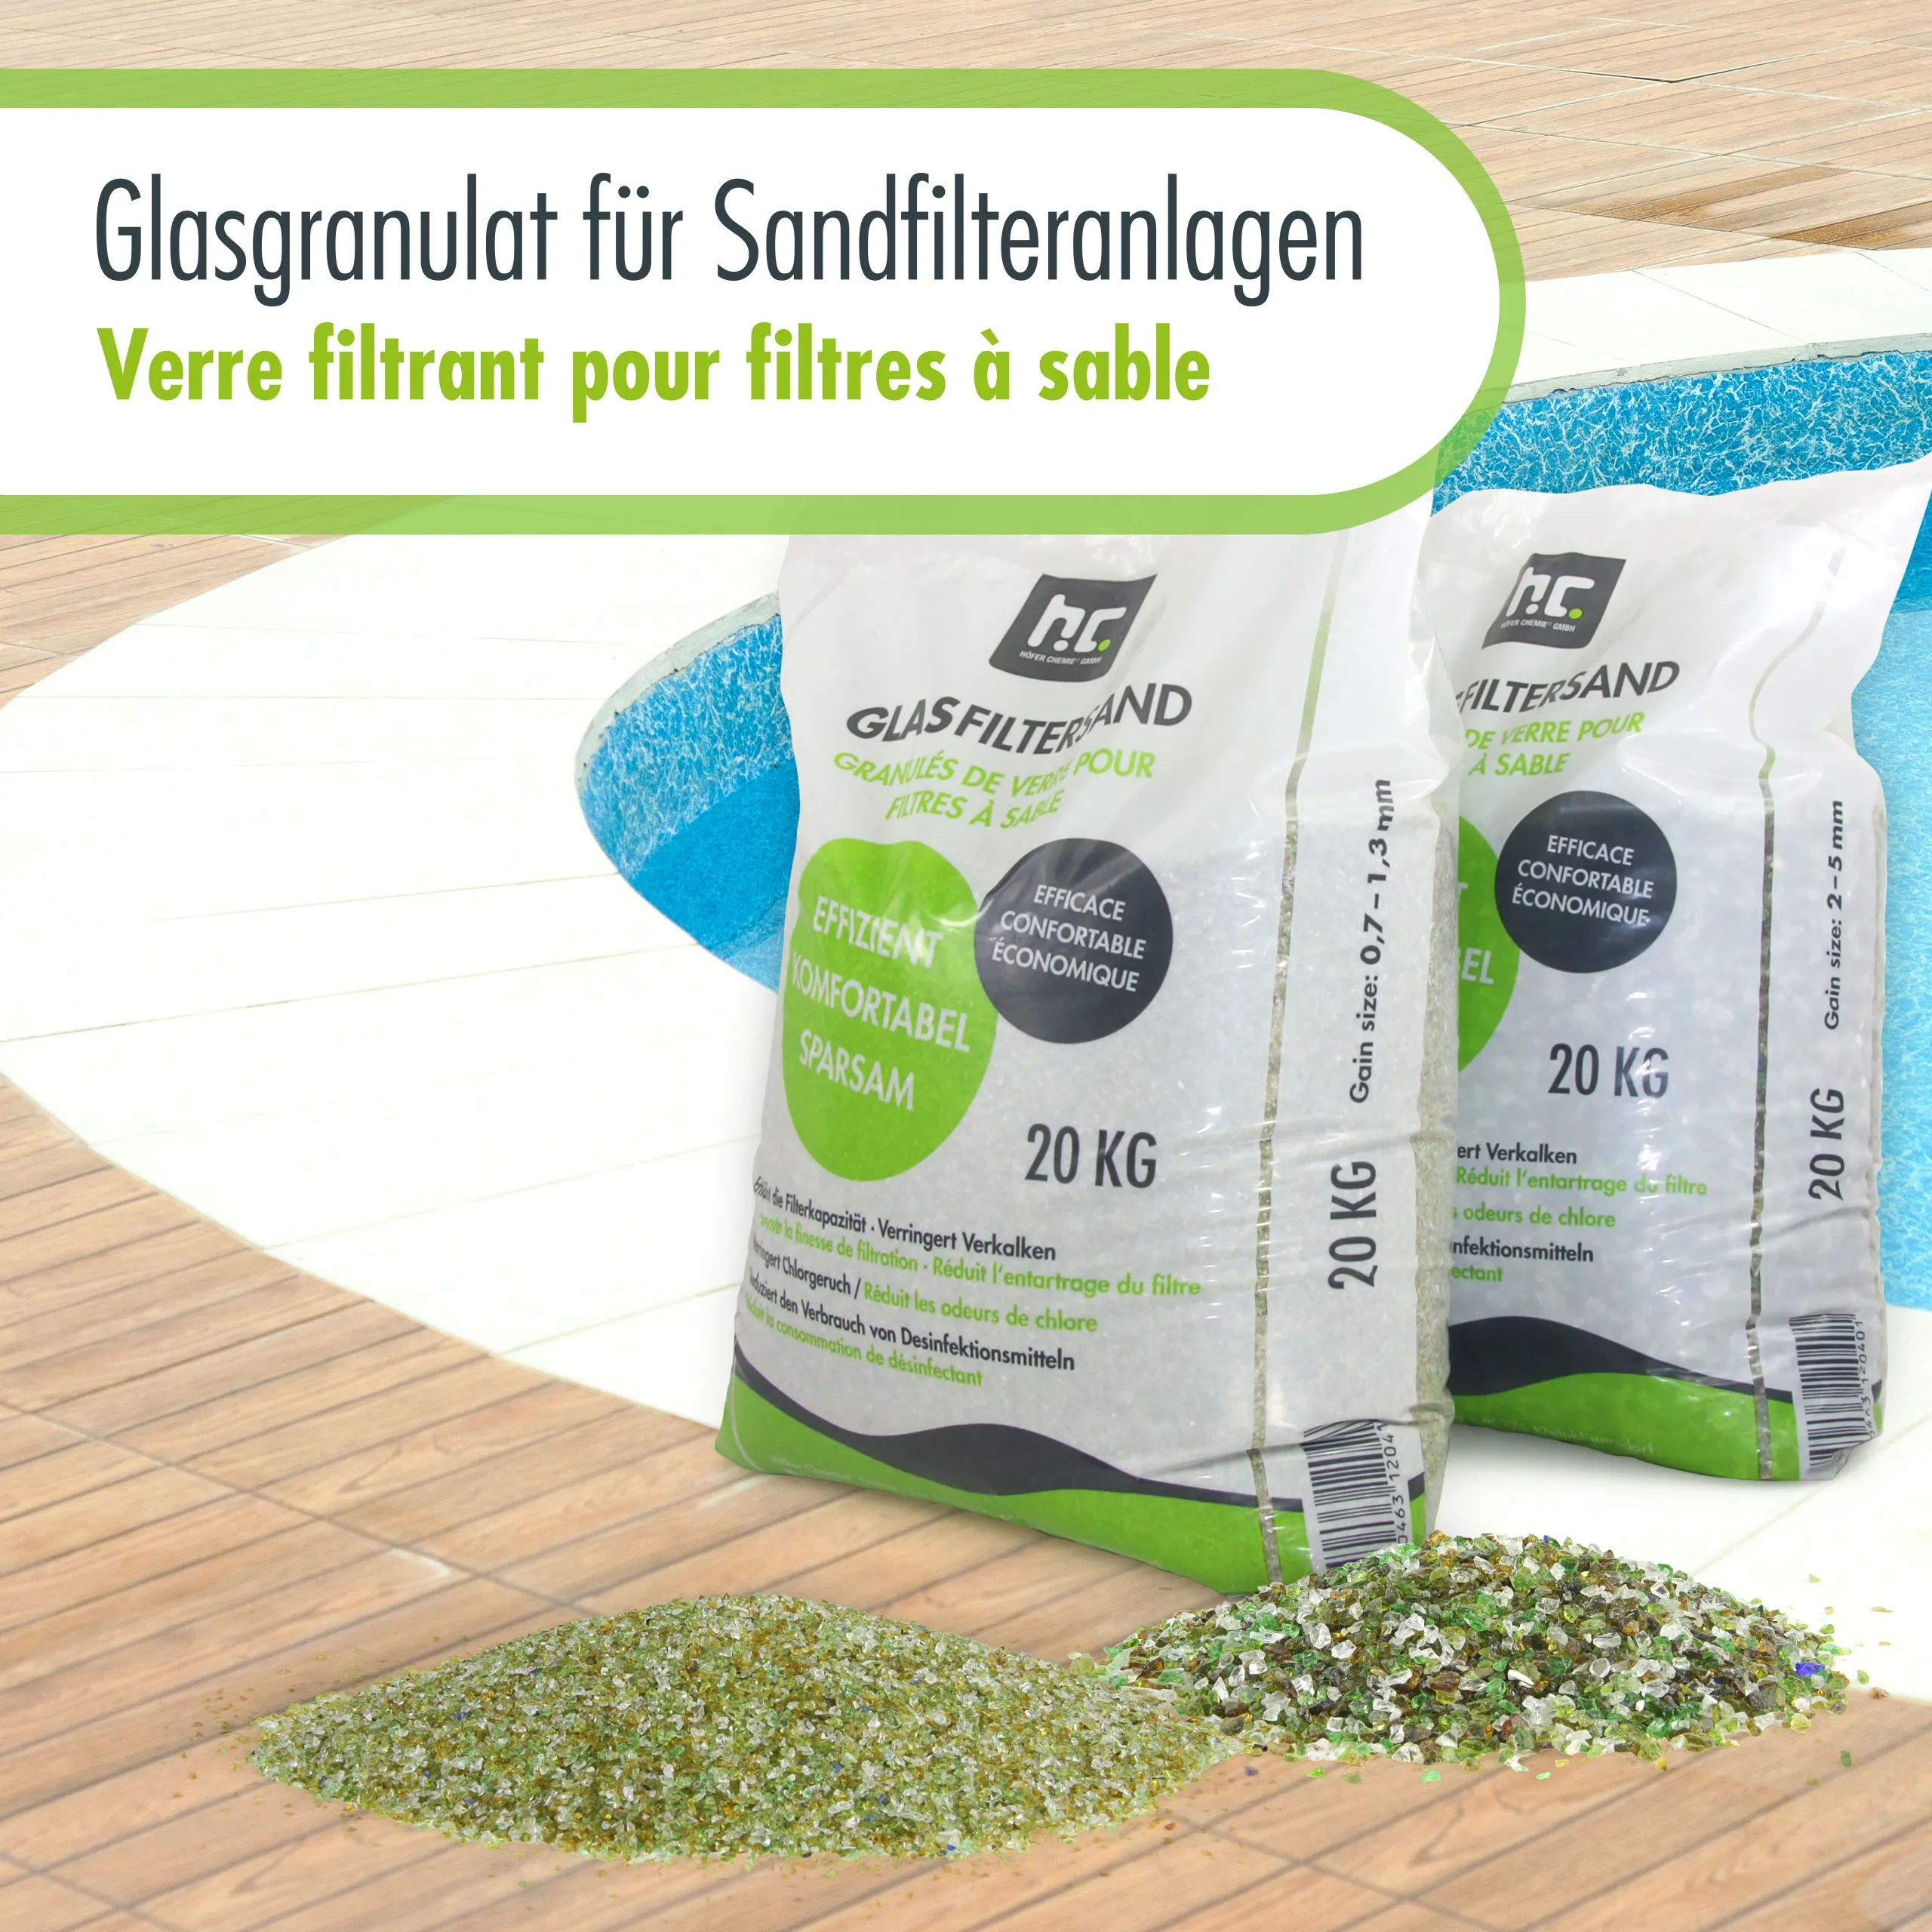 2 x 20 kg Spezial Glasgranulat für Sandfilteranlagen - Set